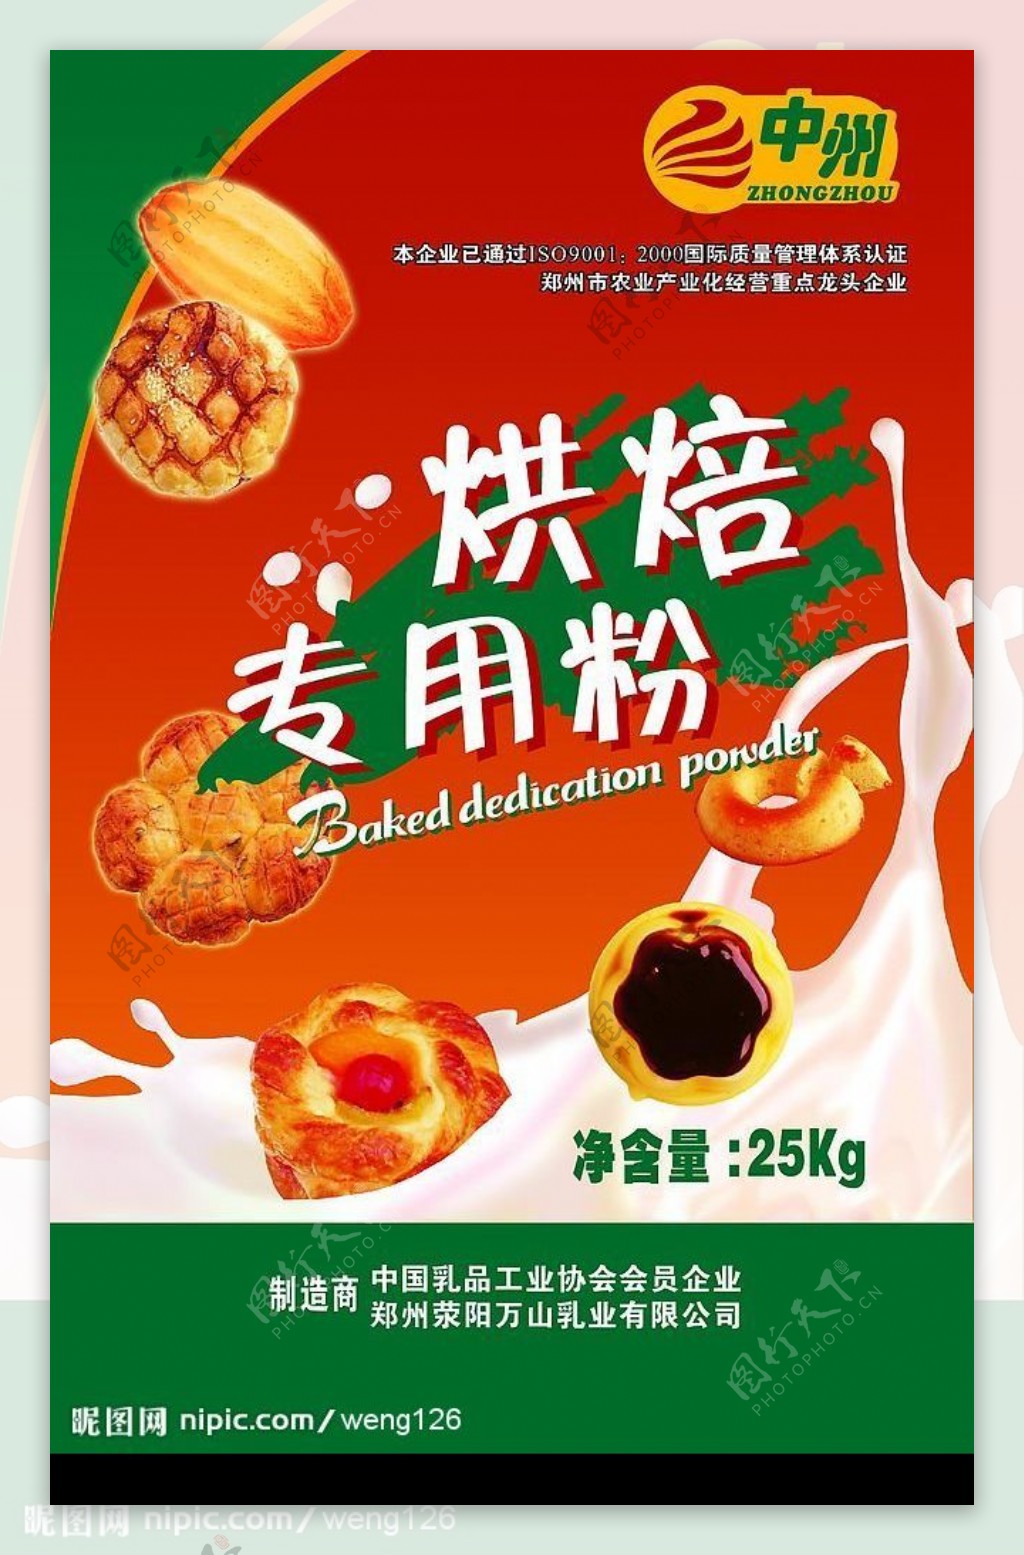 中州面包广告图片